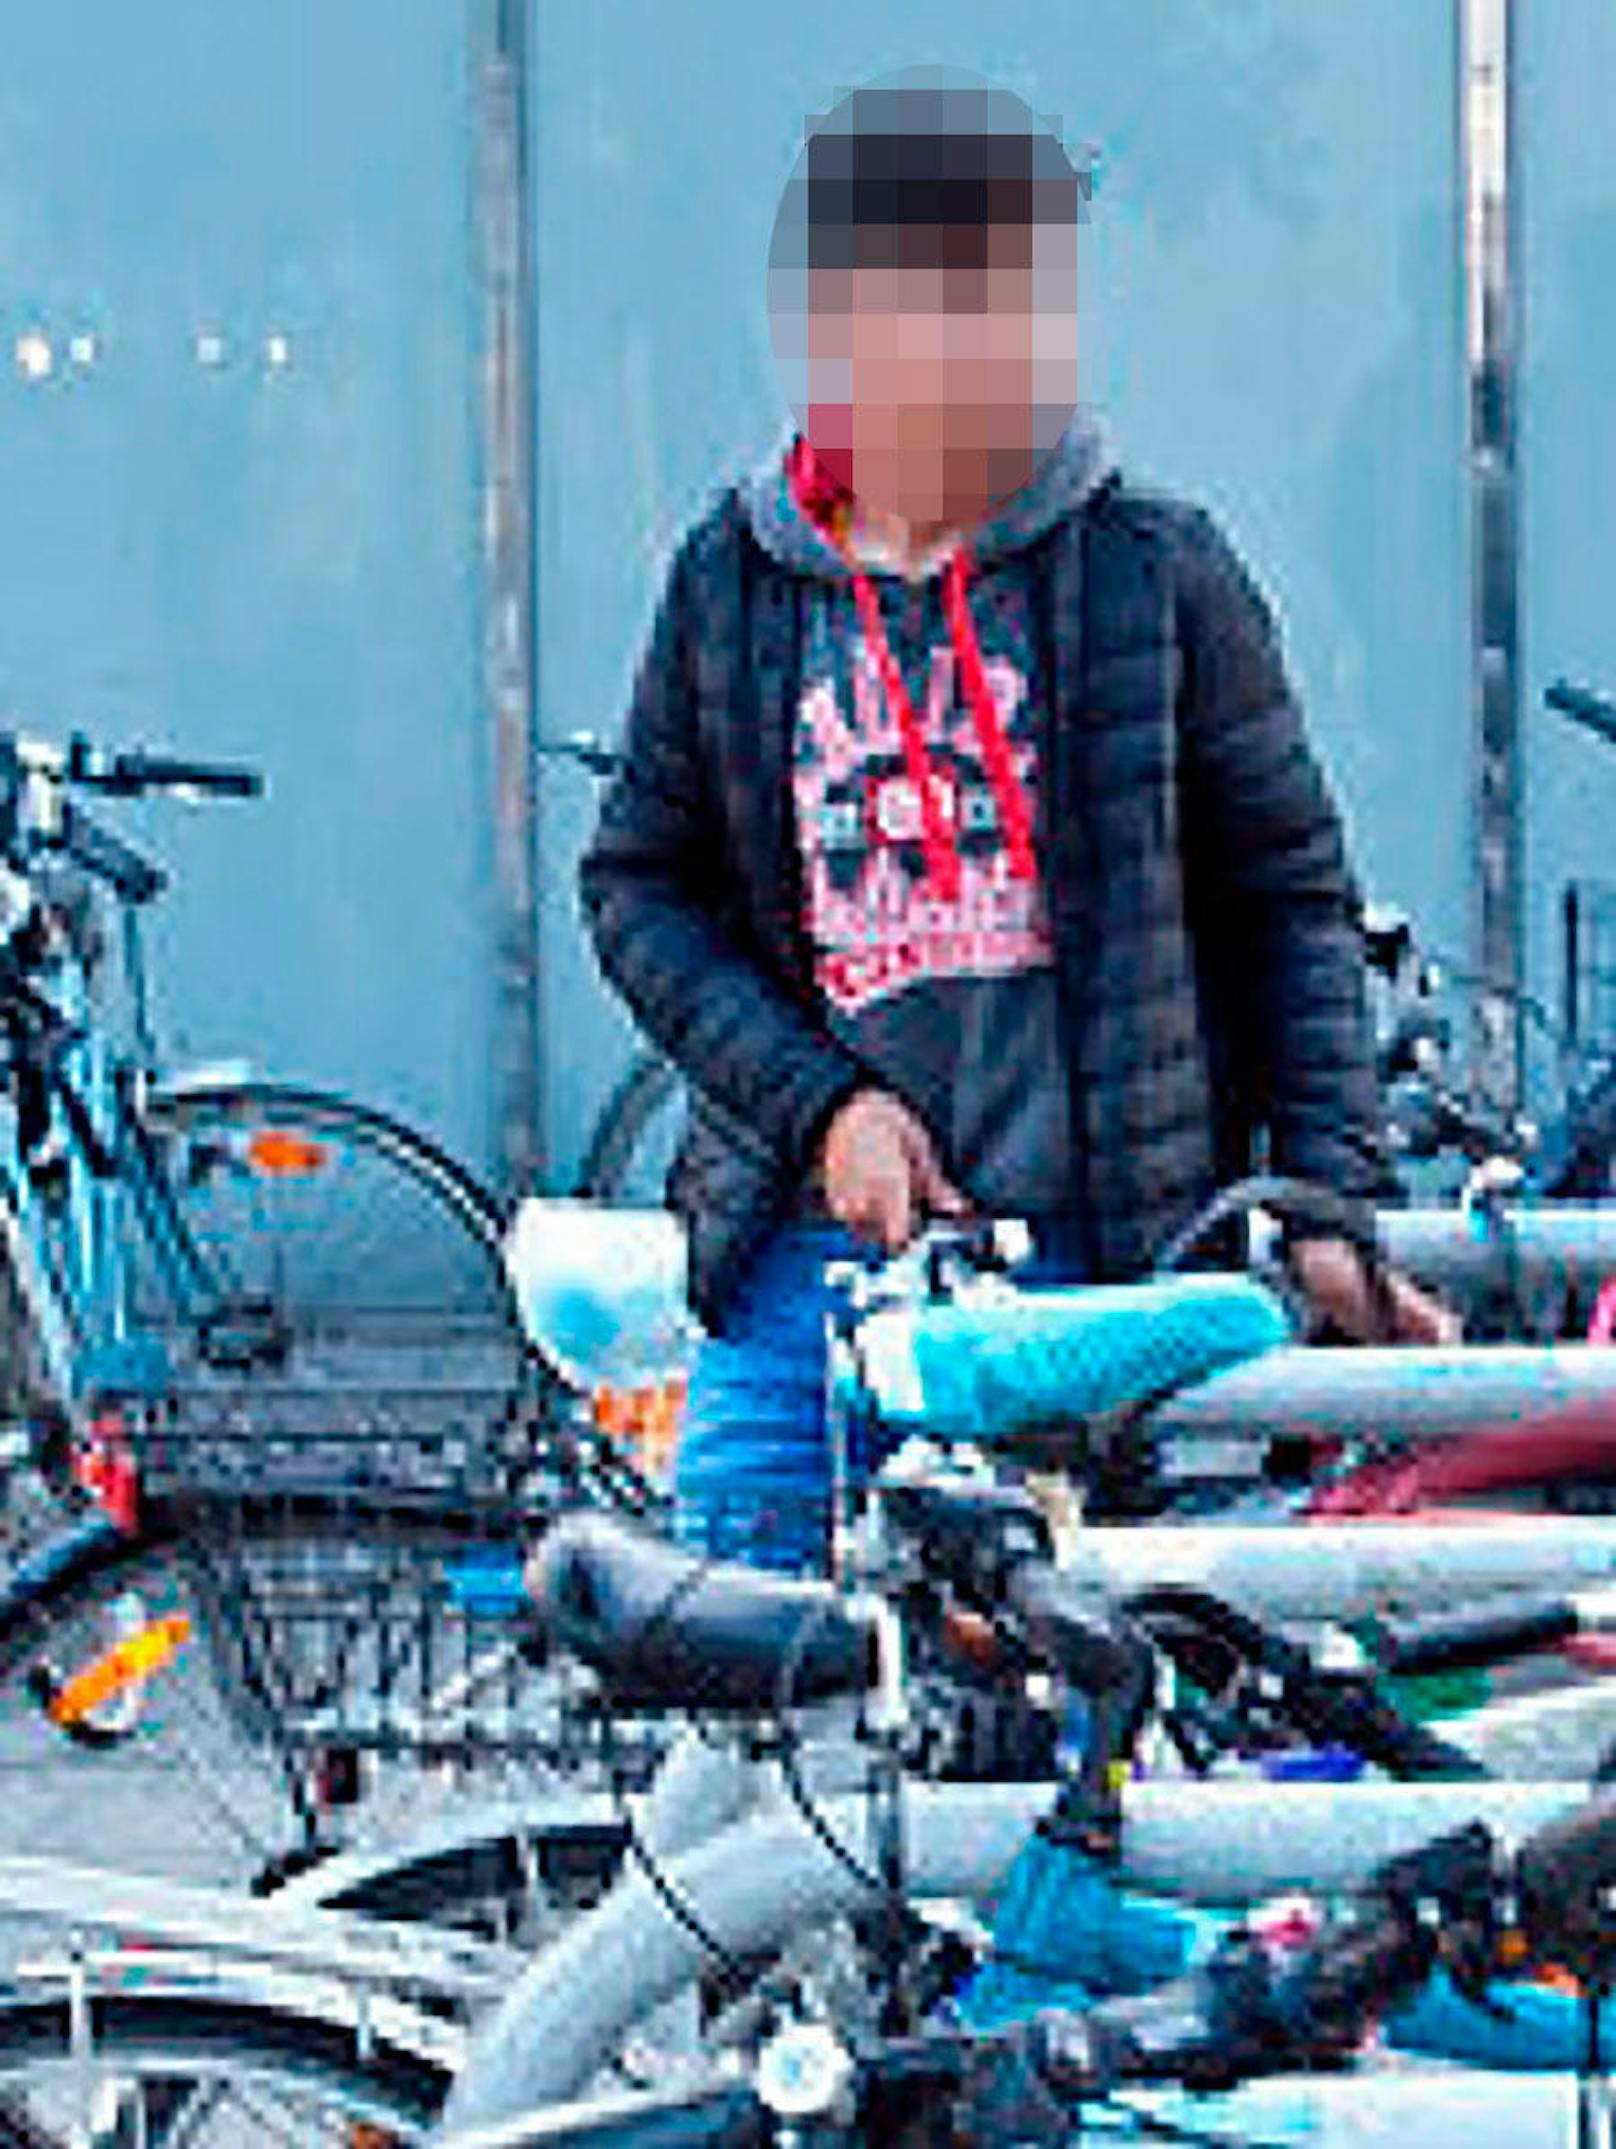 Der junge Mann auf den Fotos wird verdächtigt, am 3. Oktober 2018 in Wien-Donaustadt Fahrräder gestohlen zu haben.